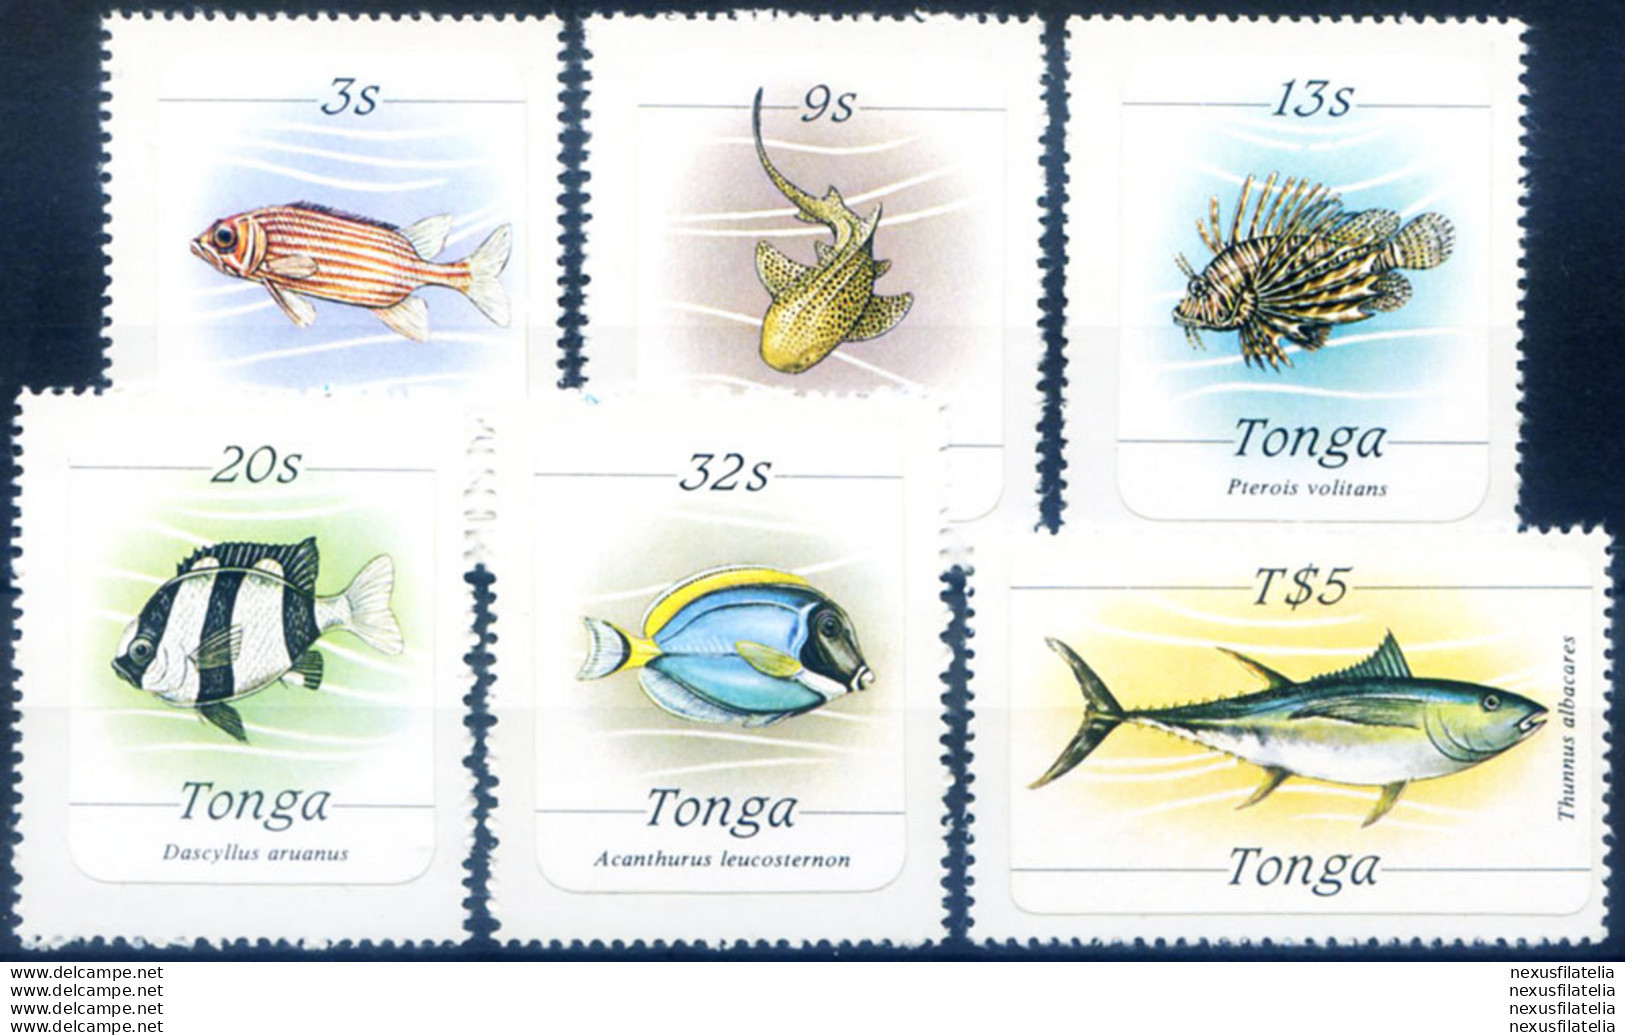 Definitiva. Fauna. Pesci 1984. - Tonga (1970-...)